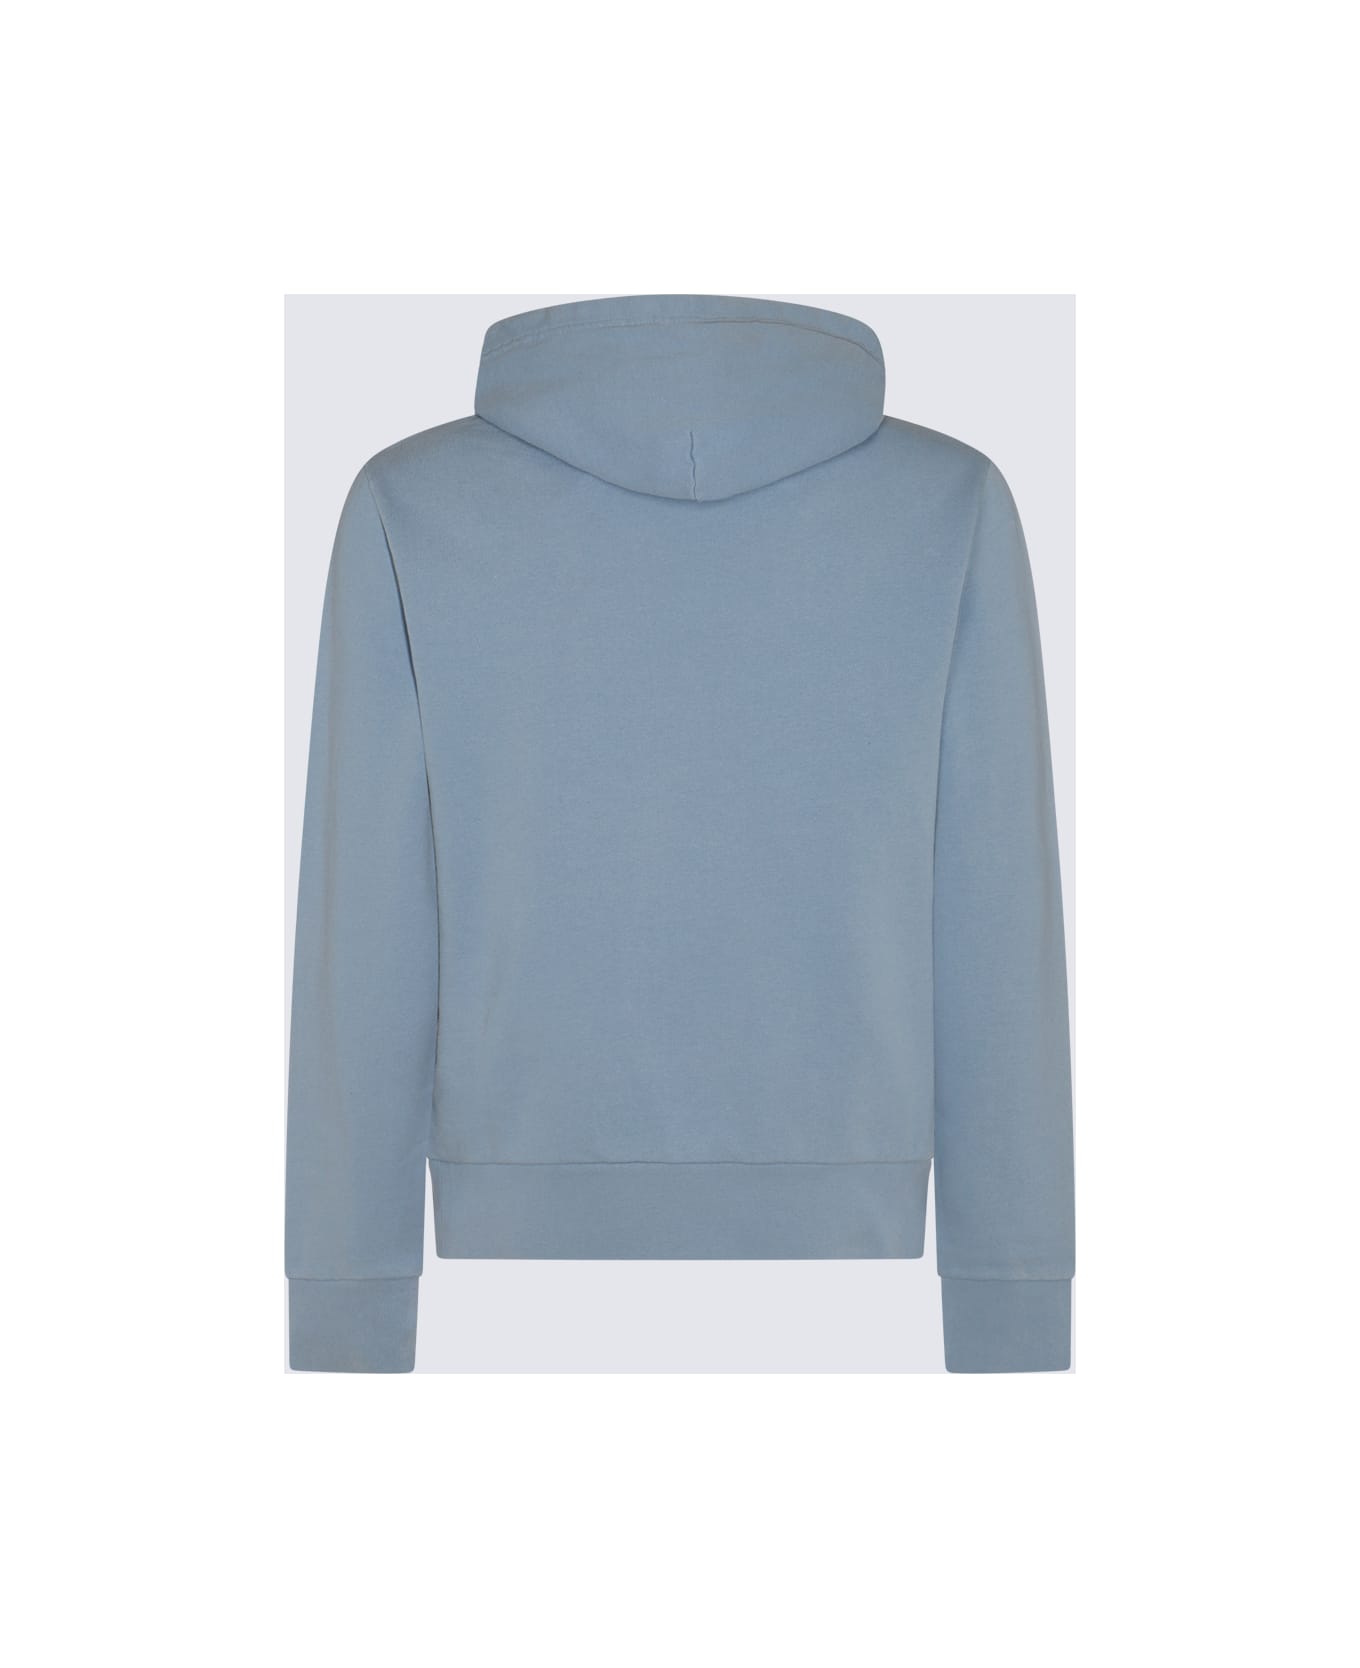 Polo Ralph Lauren Blue Cotton Sweatshirt - Celeste